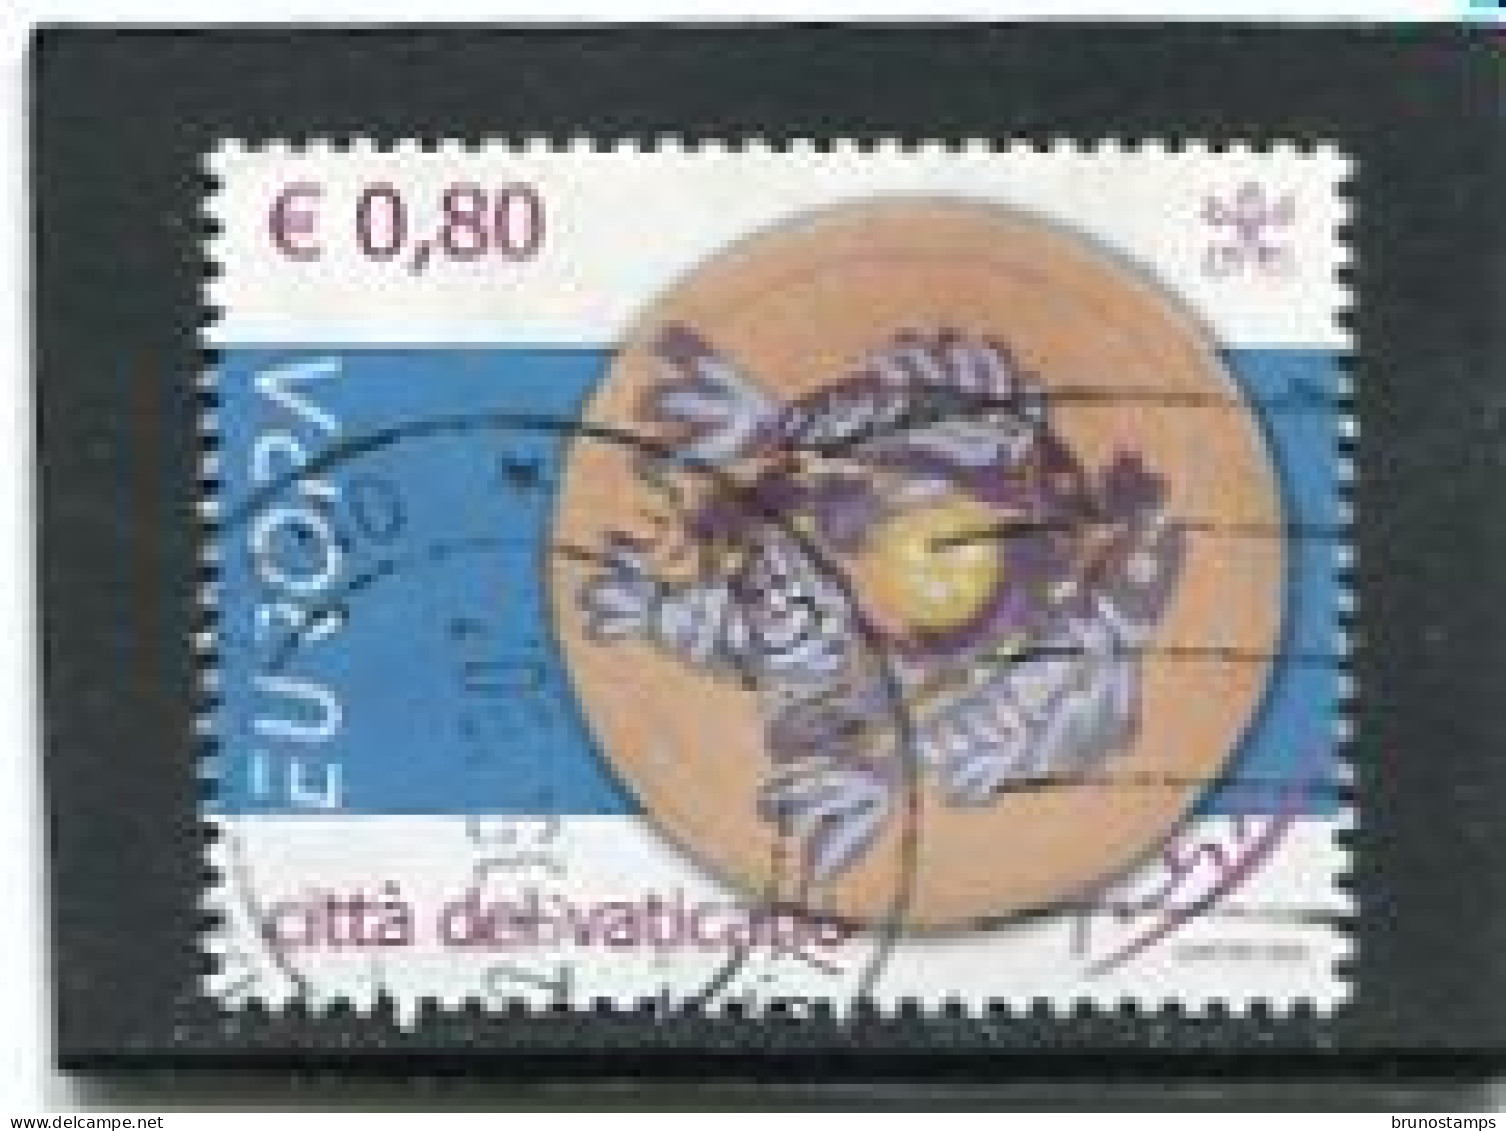 VATICAN CITY/VATICANO - 2005  80c  EUROPA   FINE USED - Usados